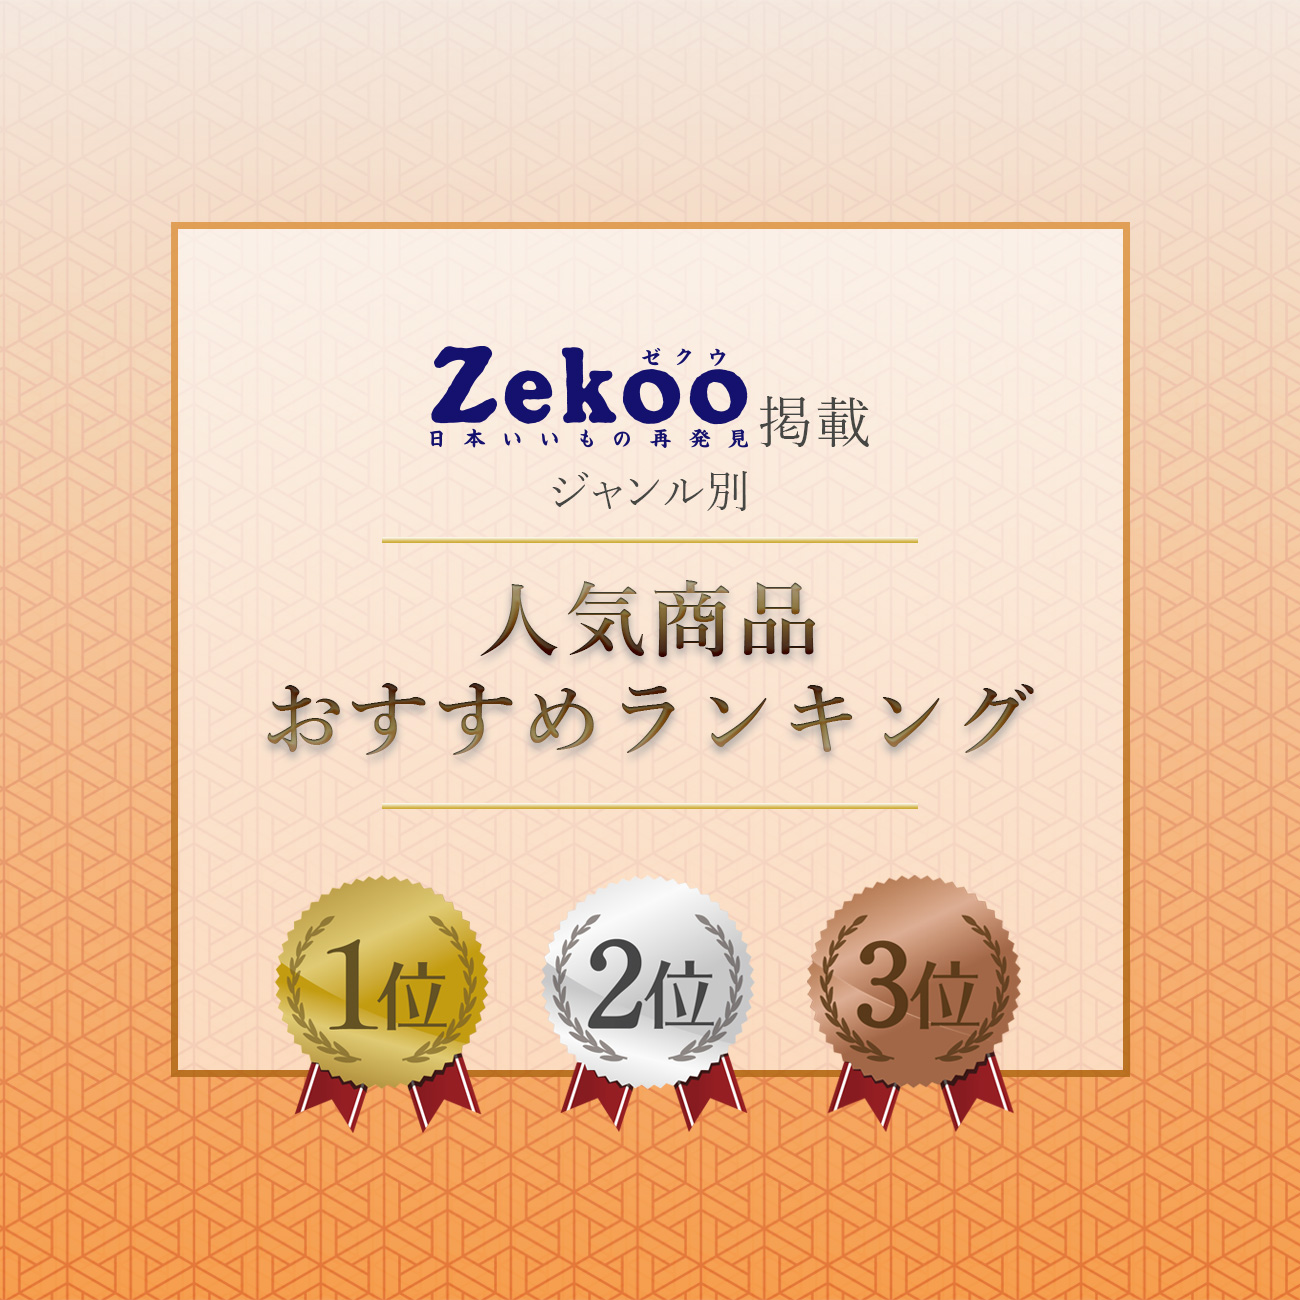 Zekoo 人気商品おすすめランキング